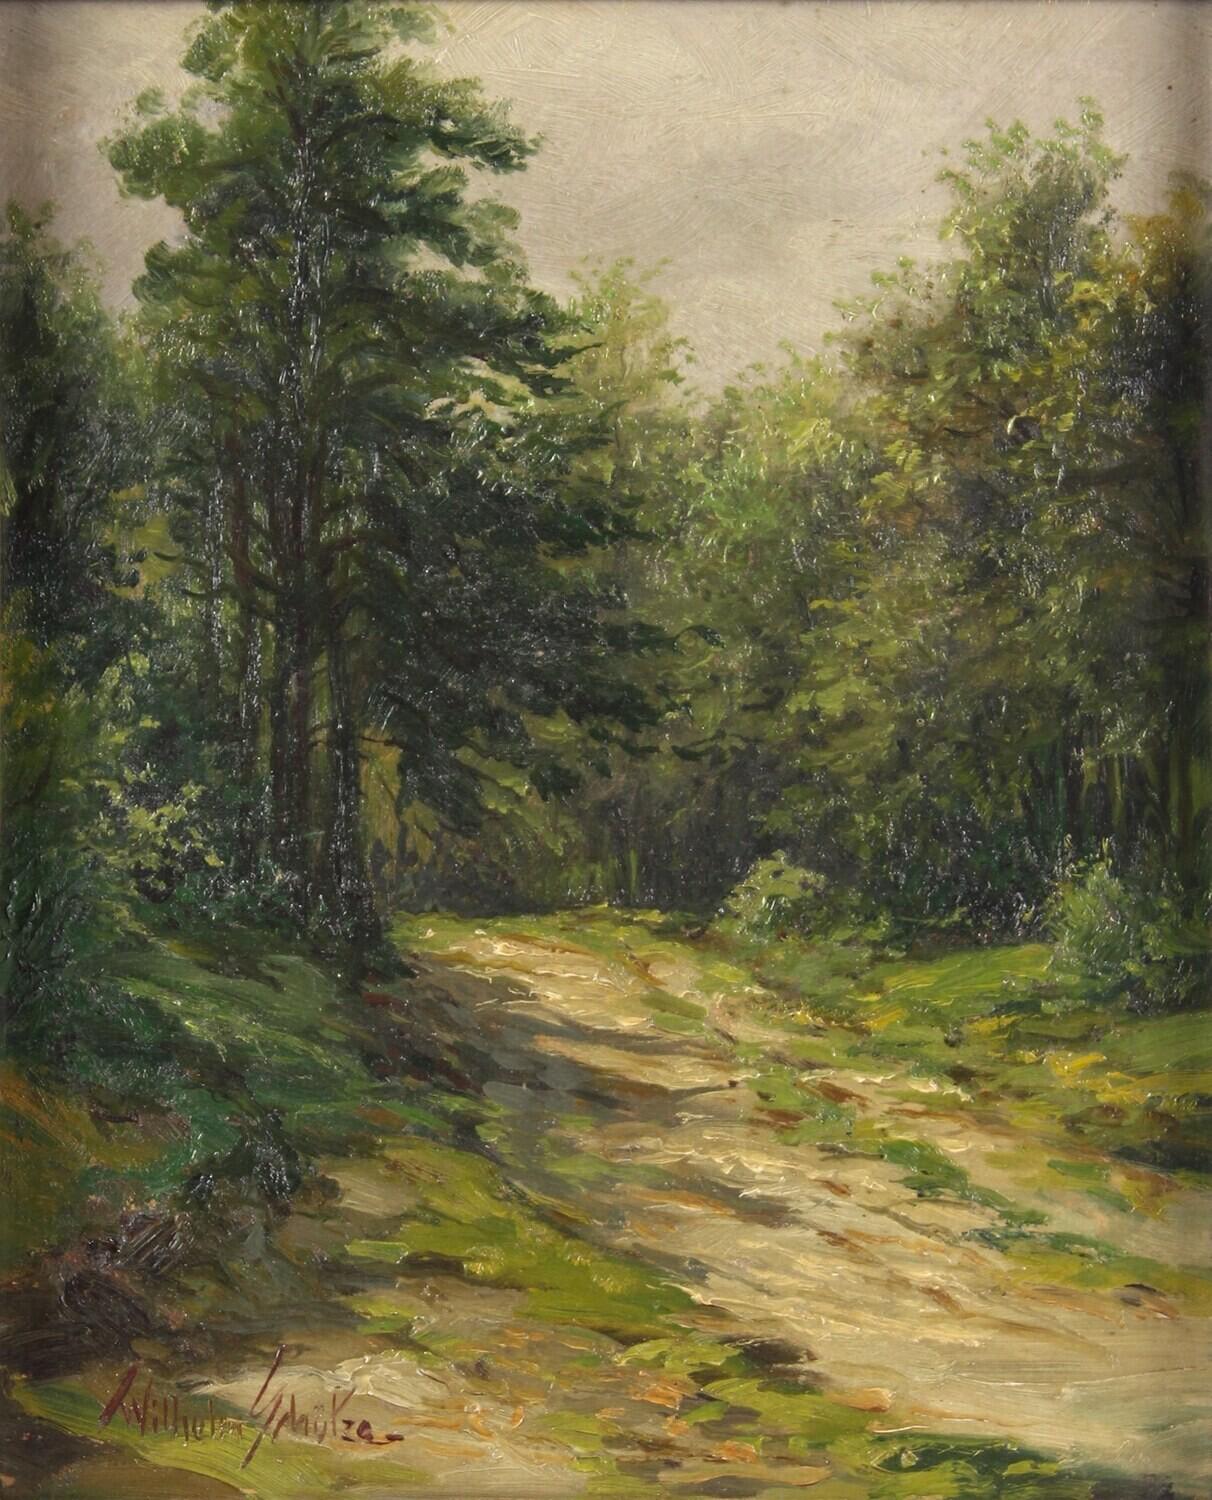 Landscape Painting Wilhelm Schütze - Chemin de bois ensoleillé - Un chemin de forêt aux couleurs vives comme un espace d'imagination -